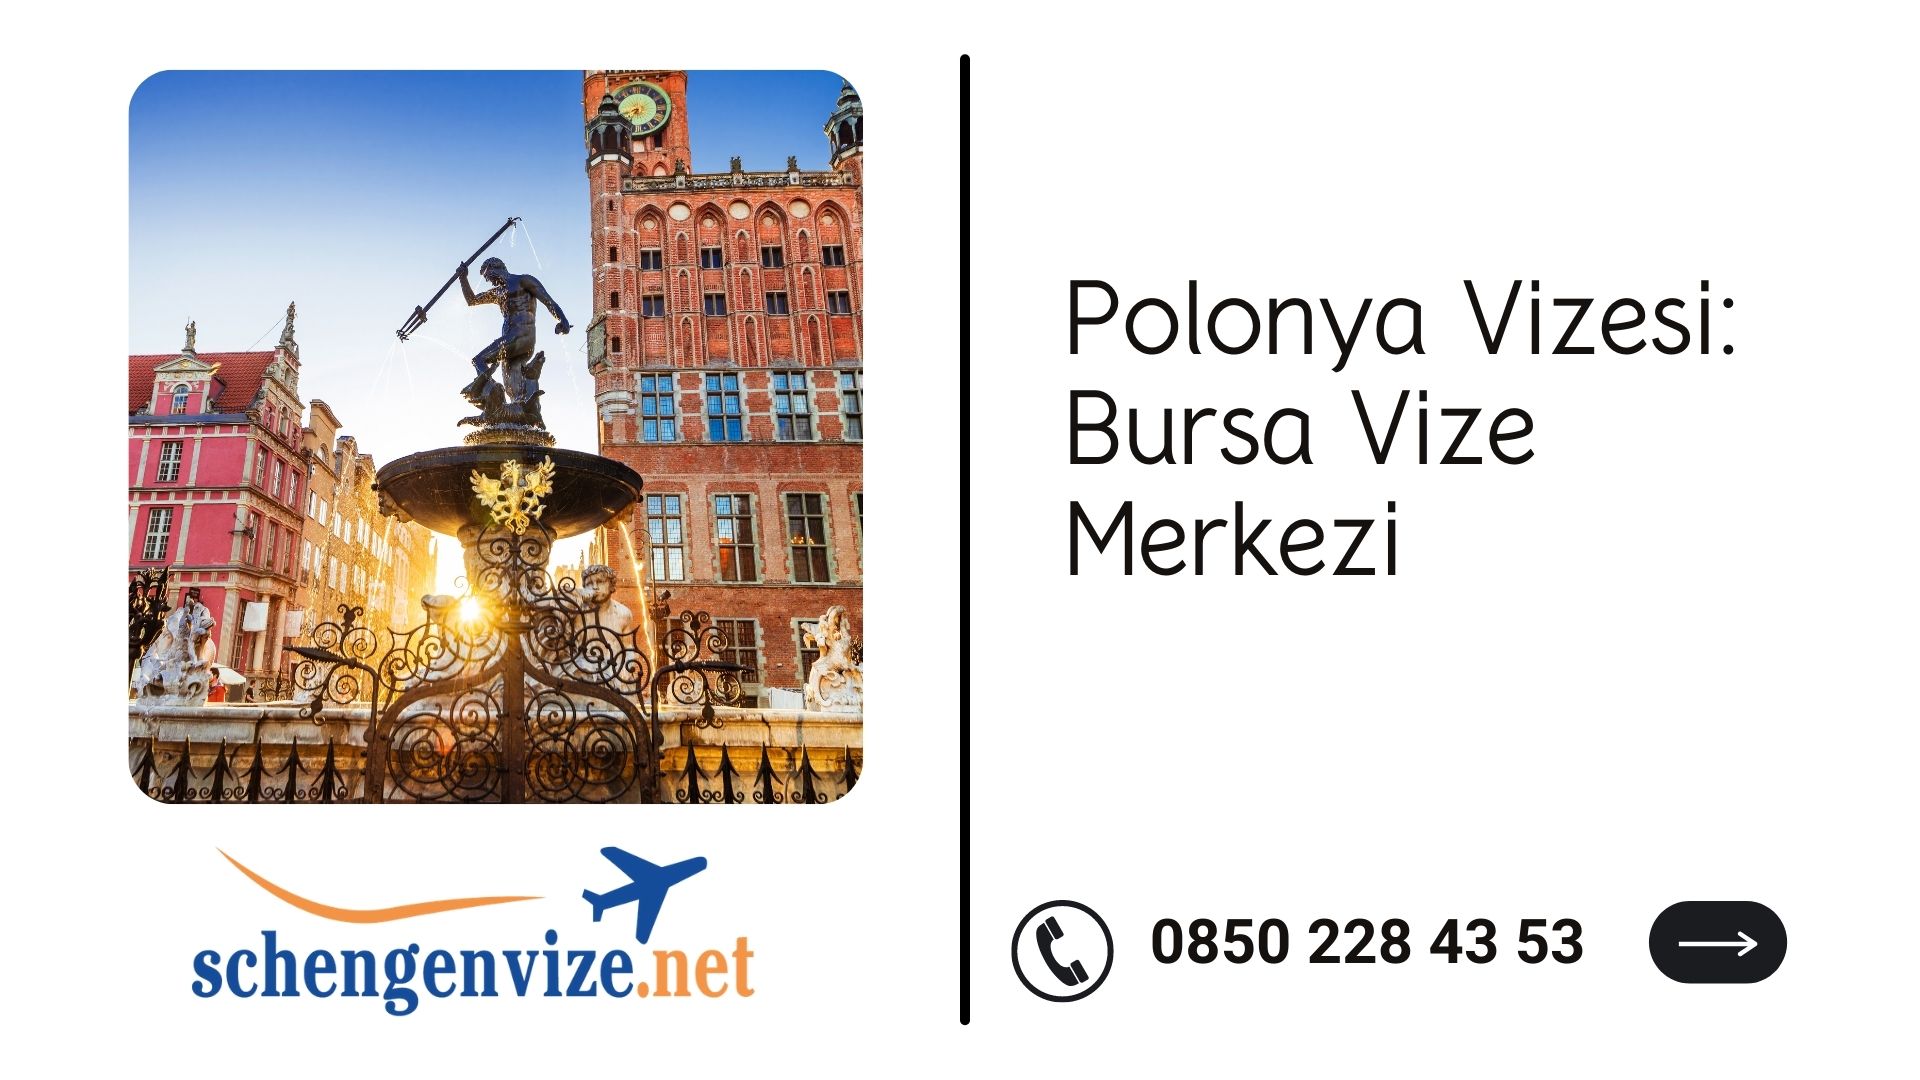 Polonya Vizesi: Bursa Vize Merkezi